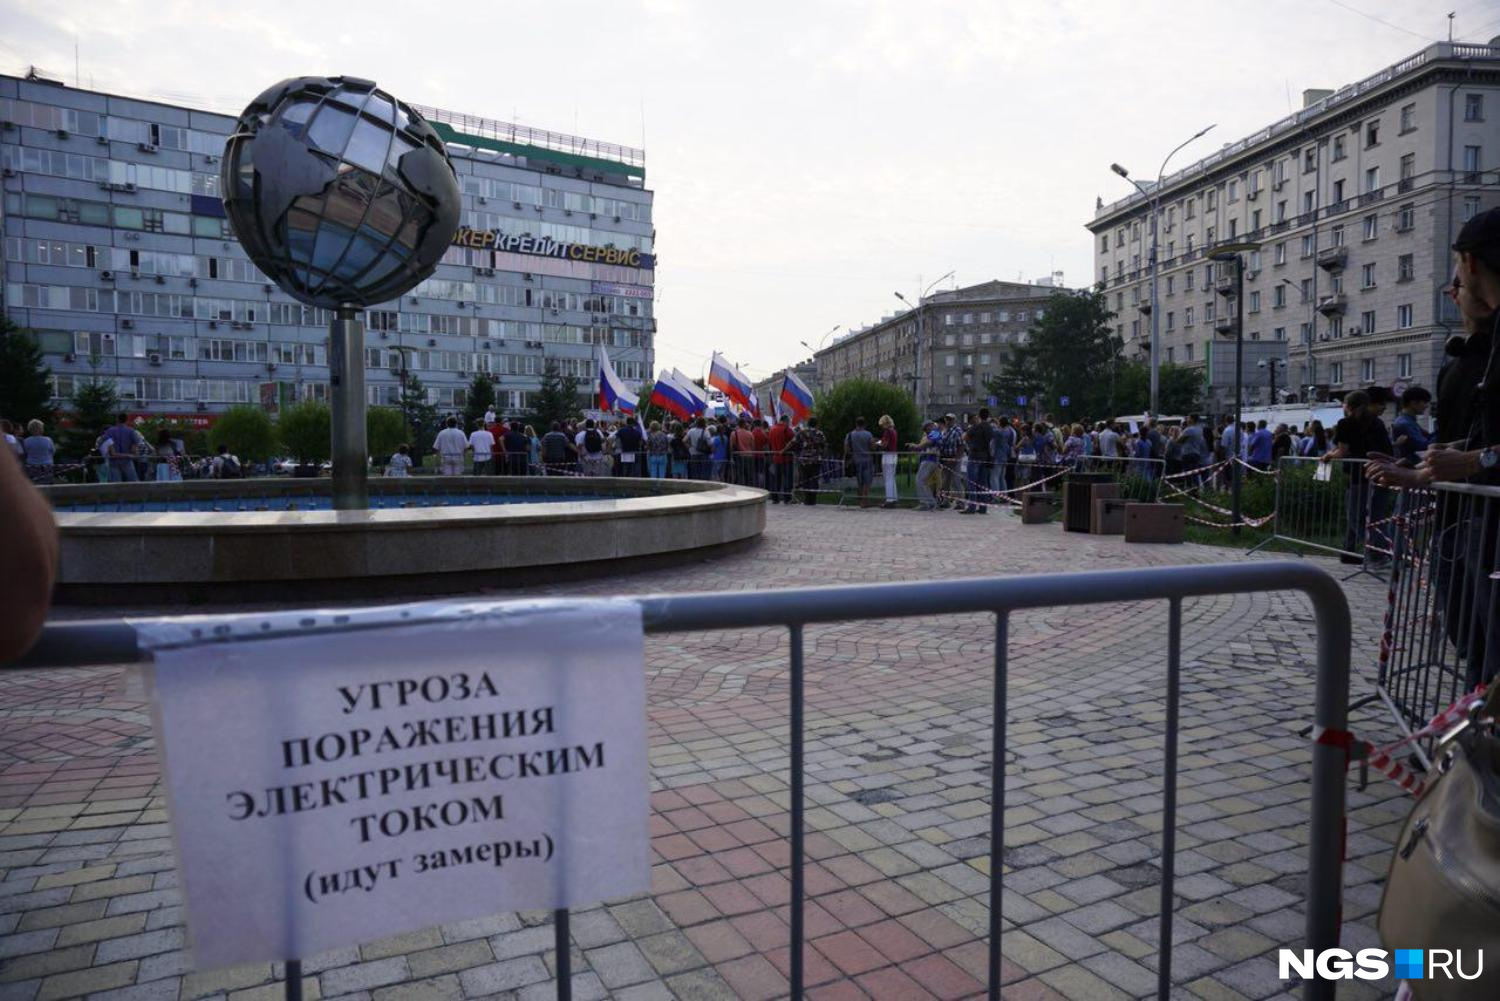 Митинг против повышения пенсионного возраста в Новосибирске. Фото Александра Ощепкова